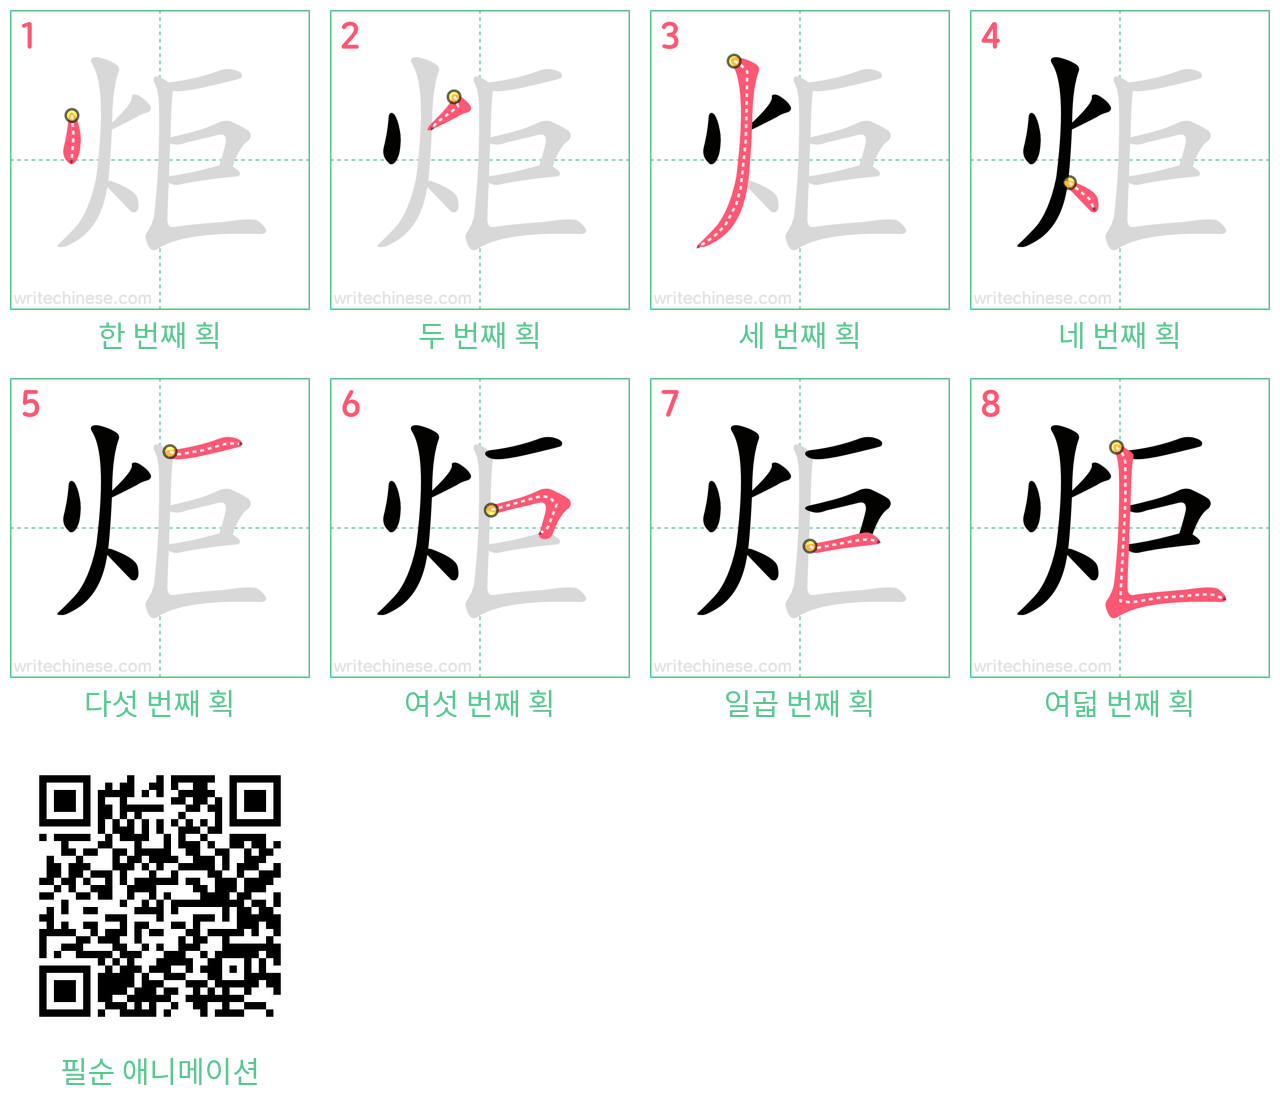 炬 step-by-step stroke order diagrams